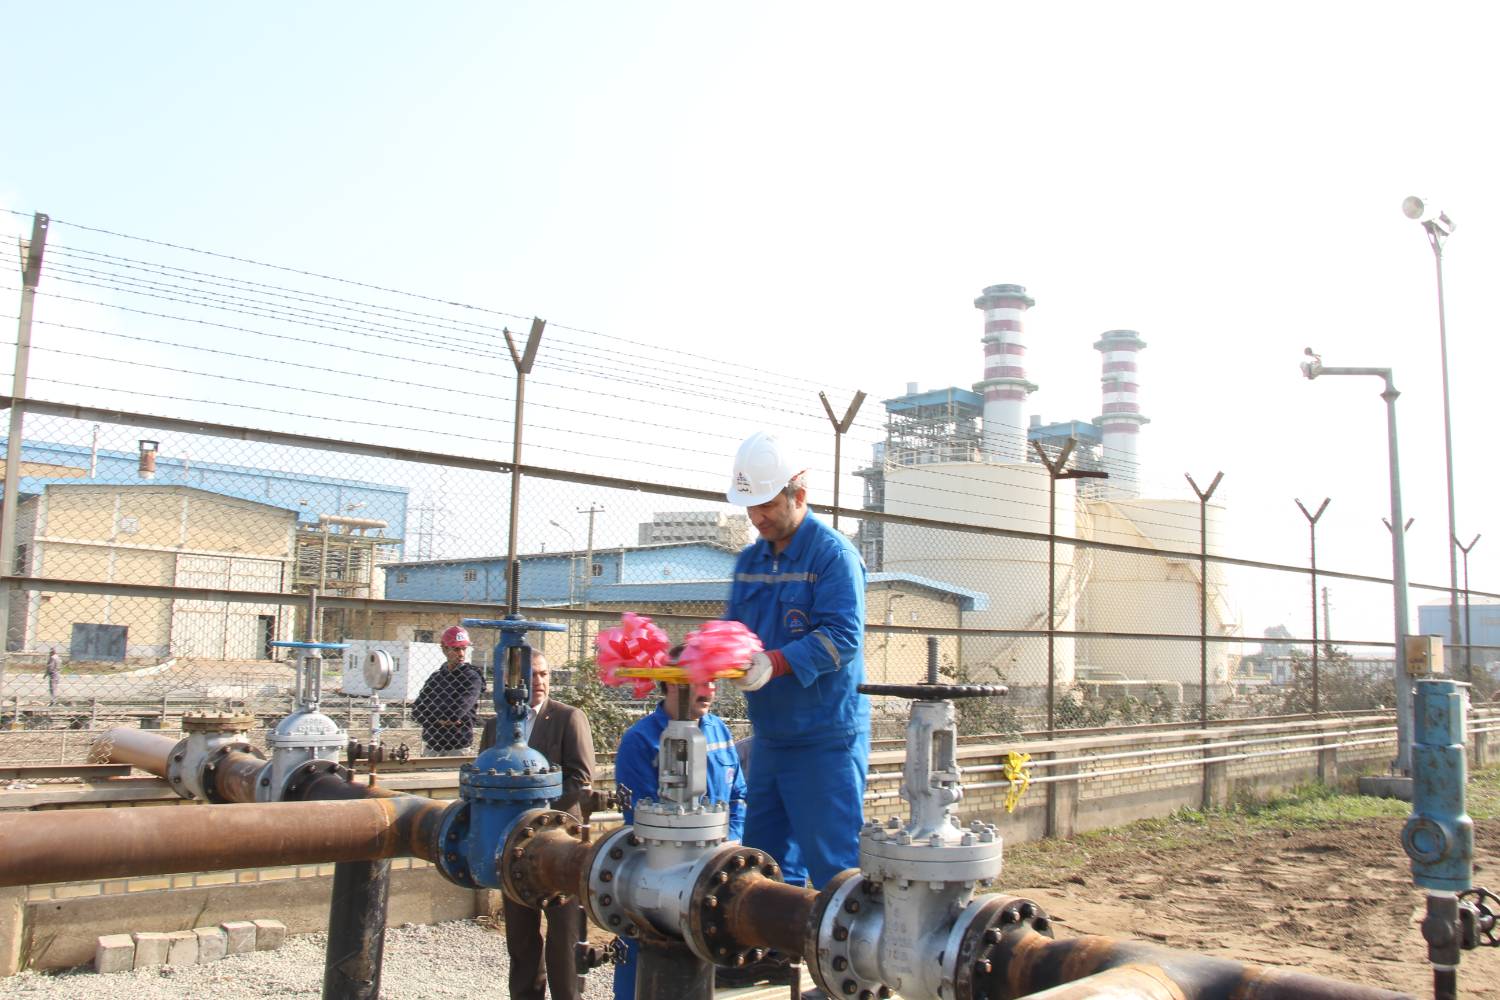 پروژه اتصال خط لوله گازوئیل به نیروگاه نکا افتتاح شد